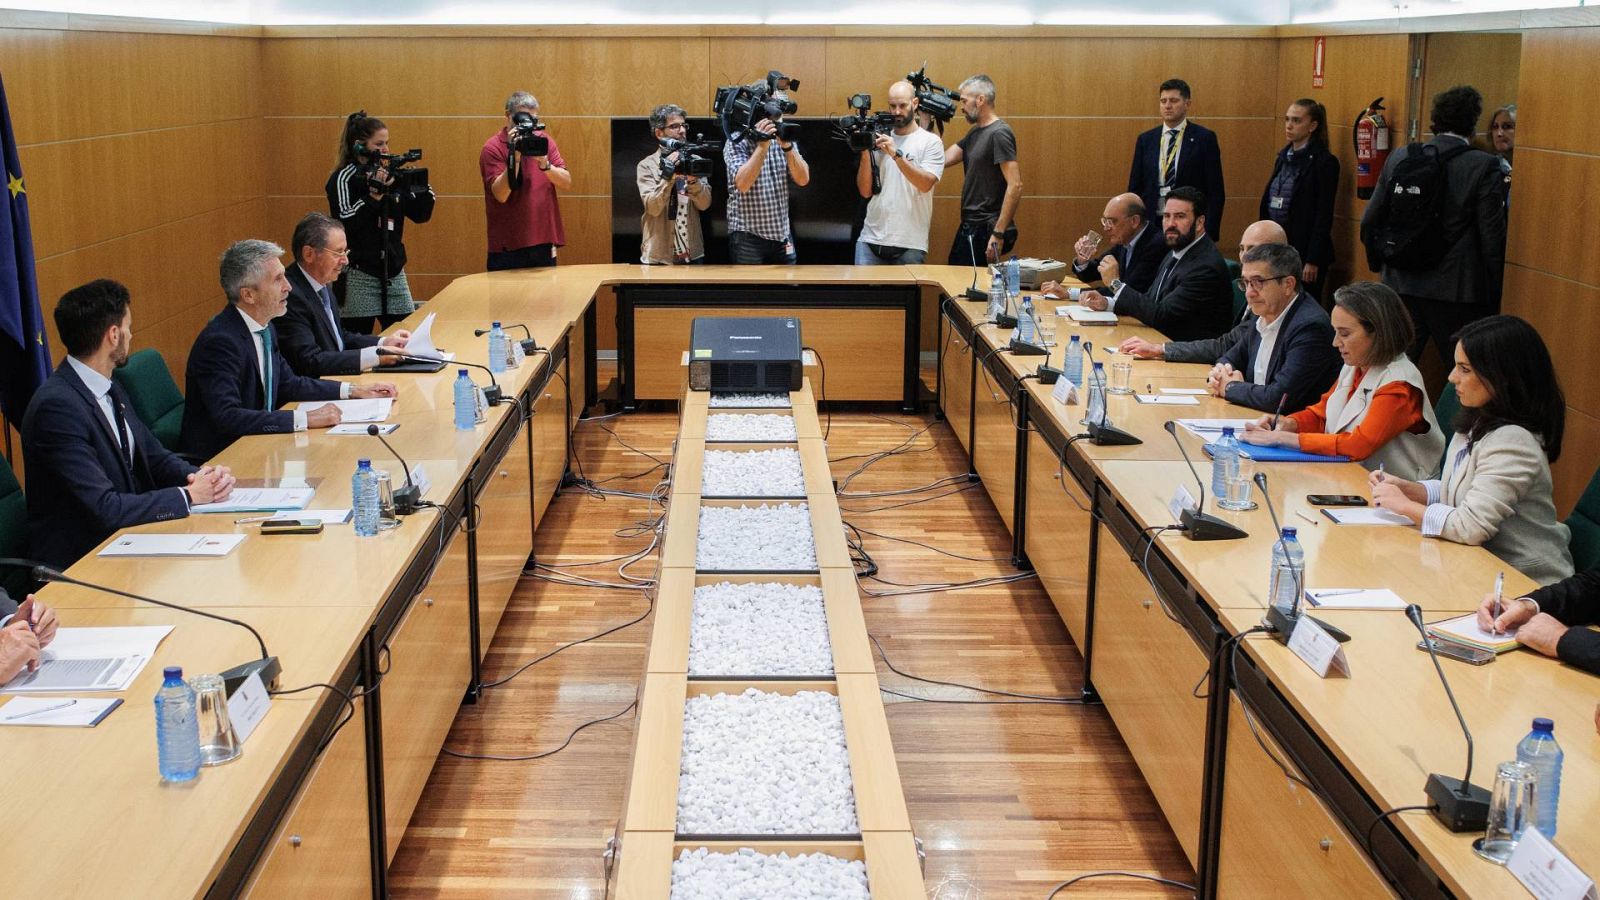 El ministro del Interior en funciones, Fernando Grande Marlaska, preside una reunión con los representantes de los grupos parlamentarios ante la alerta antiterrorista